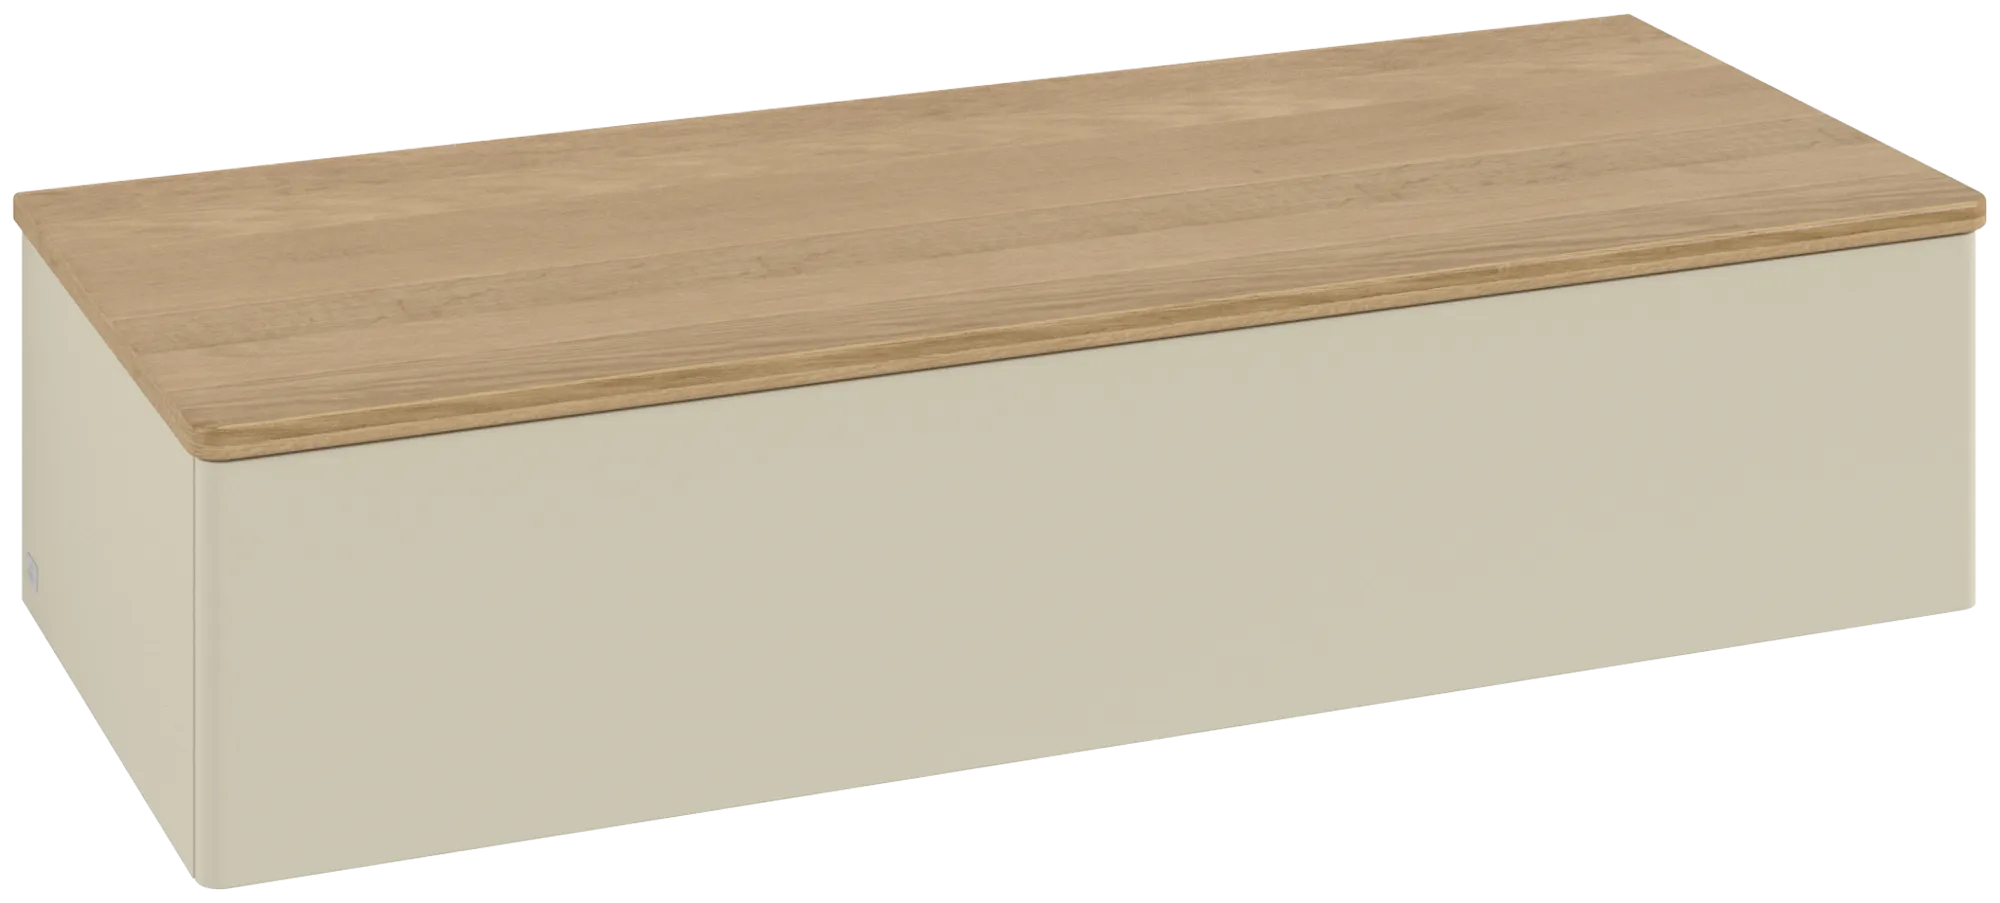 Bild von VILLEROY BOCH Antao Sideboard, mit Beleuchtung, 1 Auszug, 1200 x 268 x 500 mm, Front ohne Struktur, Silk Grey Matt Lacquer / Honey Oak #L41001HJ